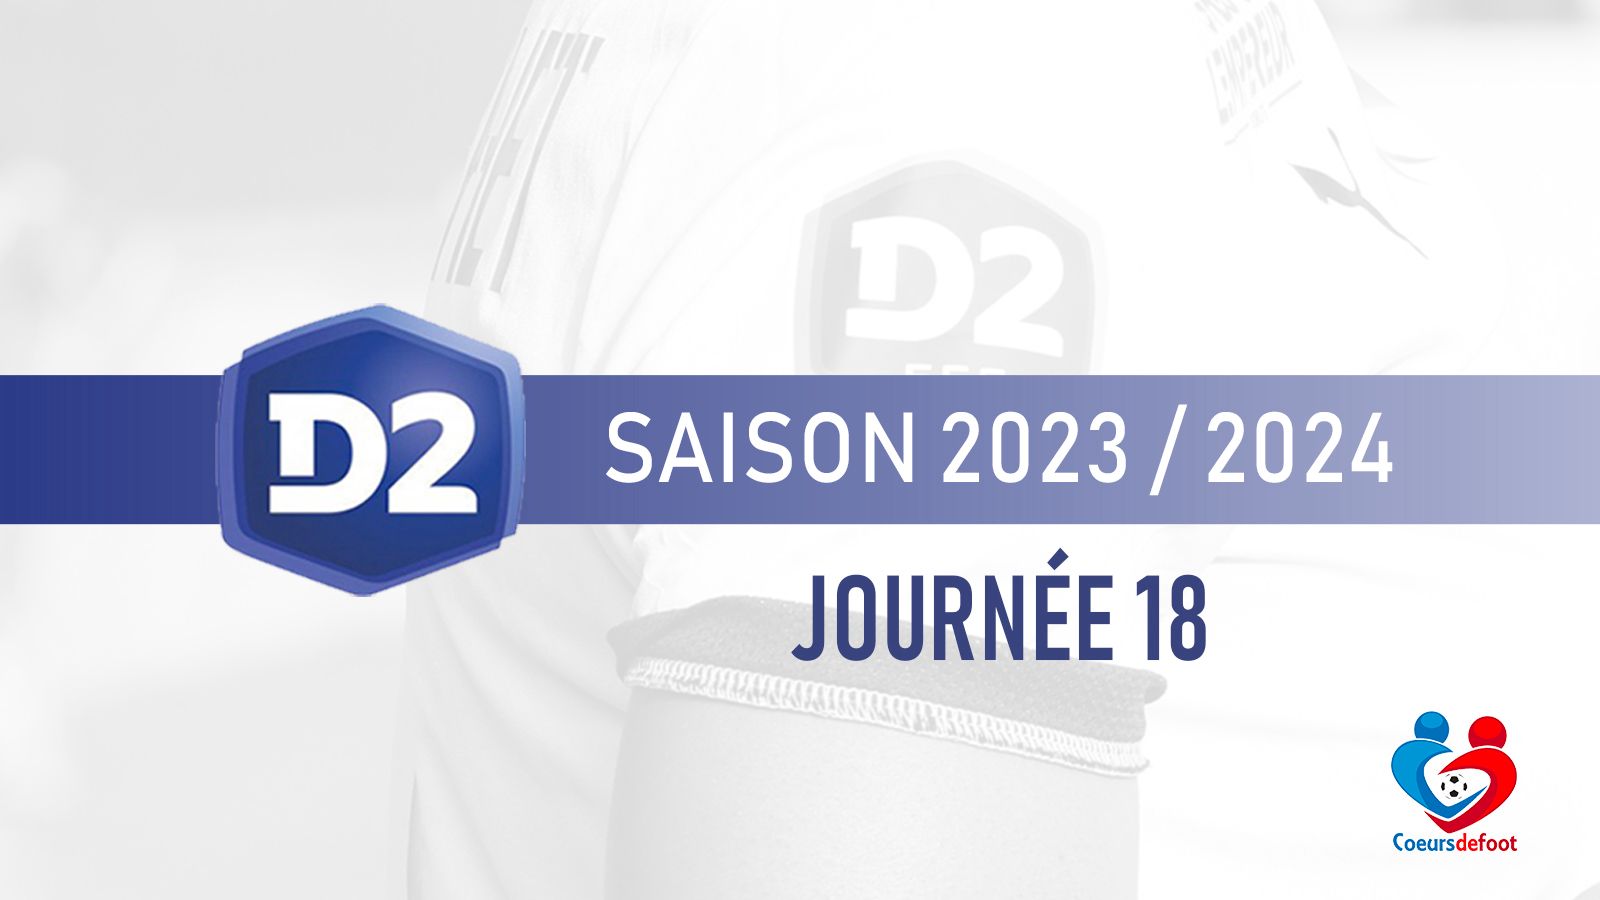 D2 (J18) - Marseille renait, lutte âpre pour le maintien entre Metz et Le Mans